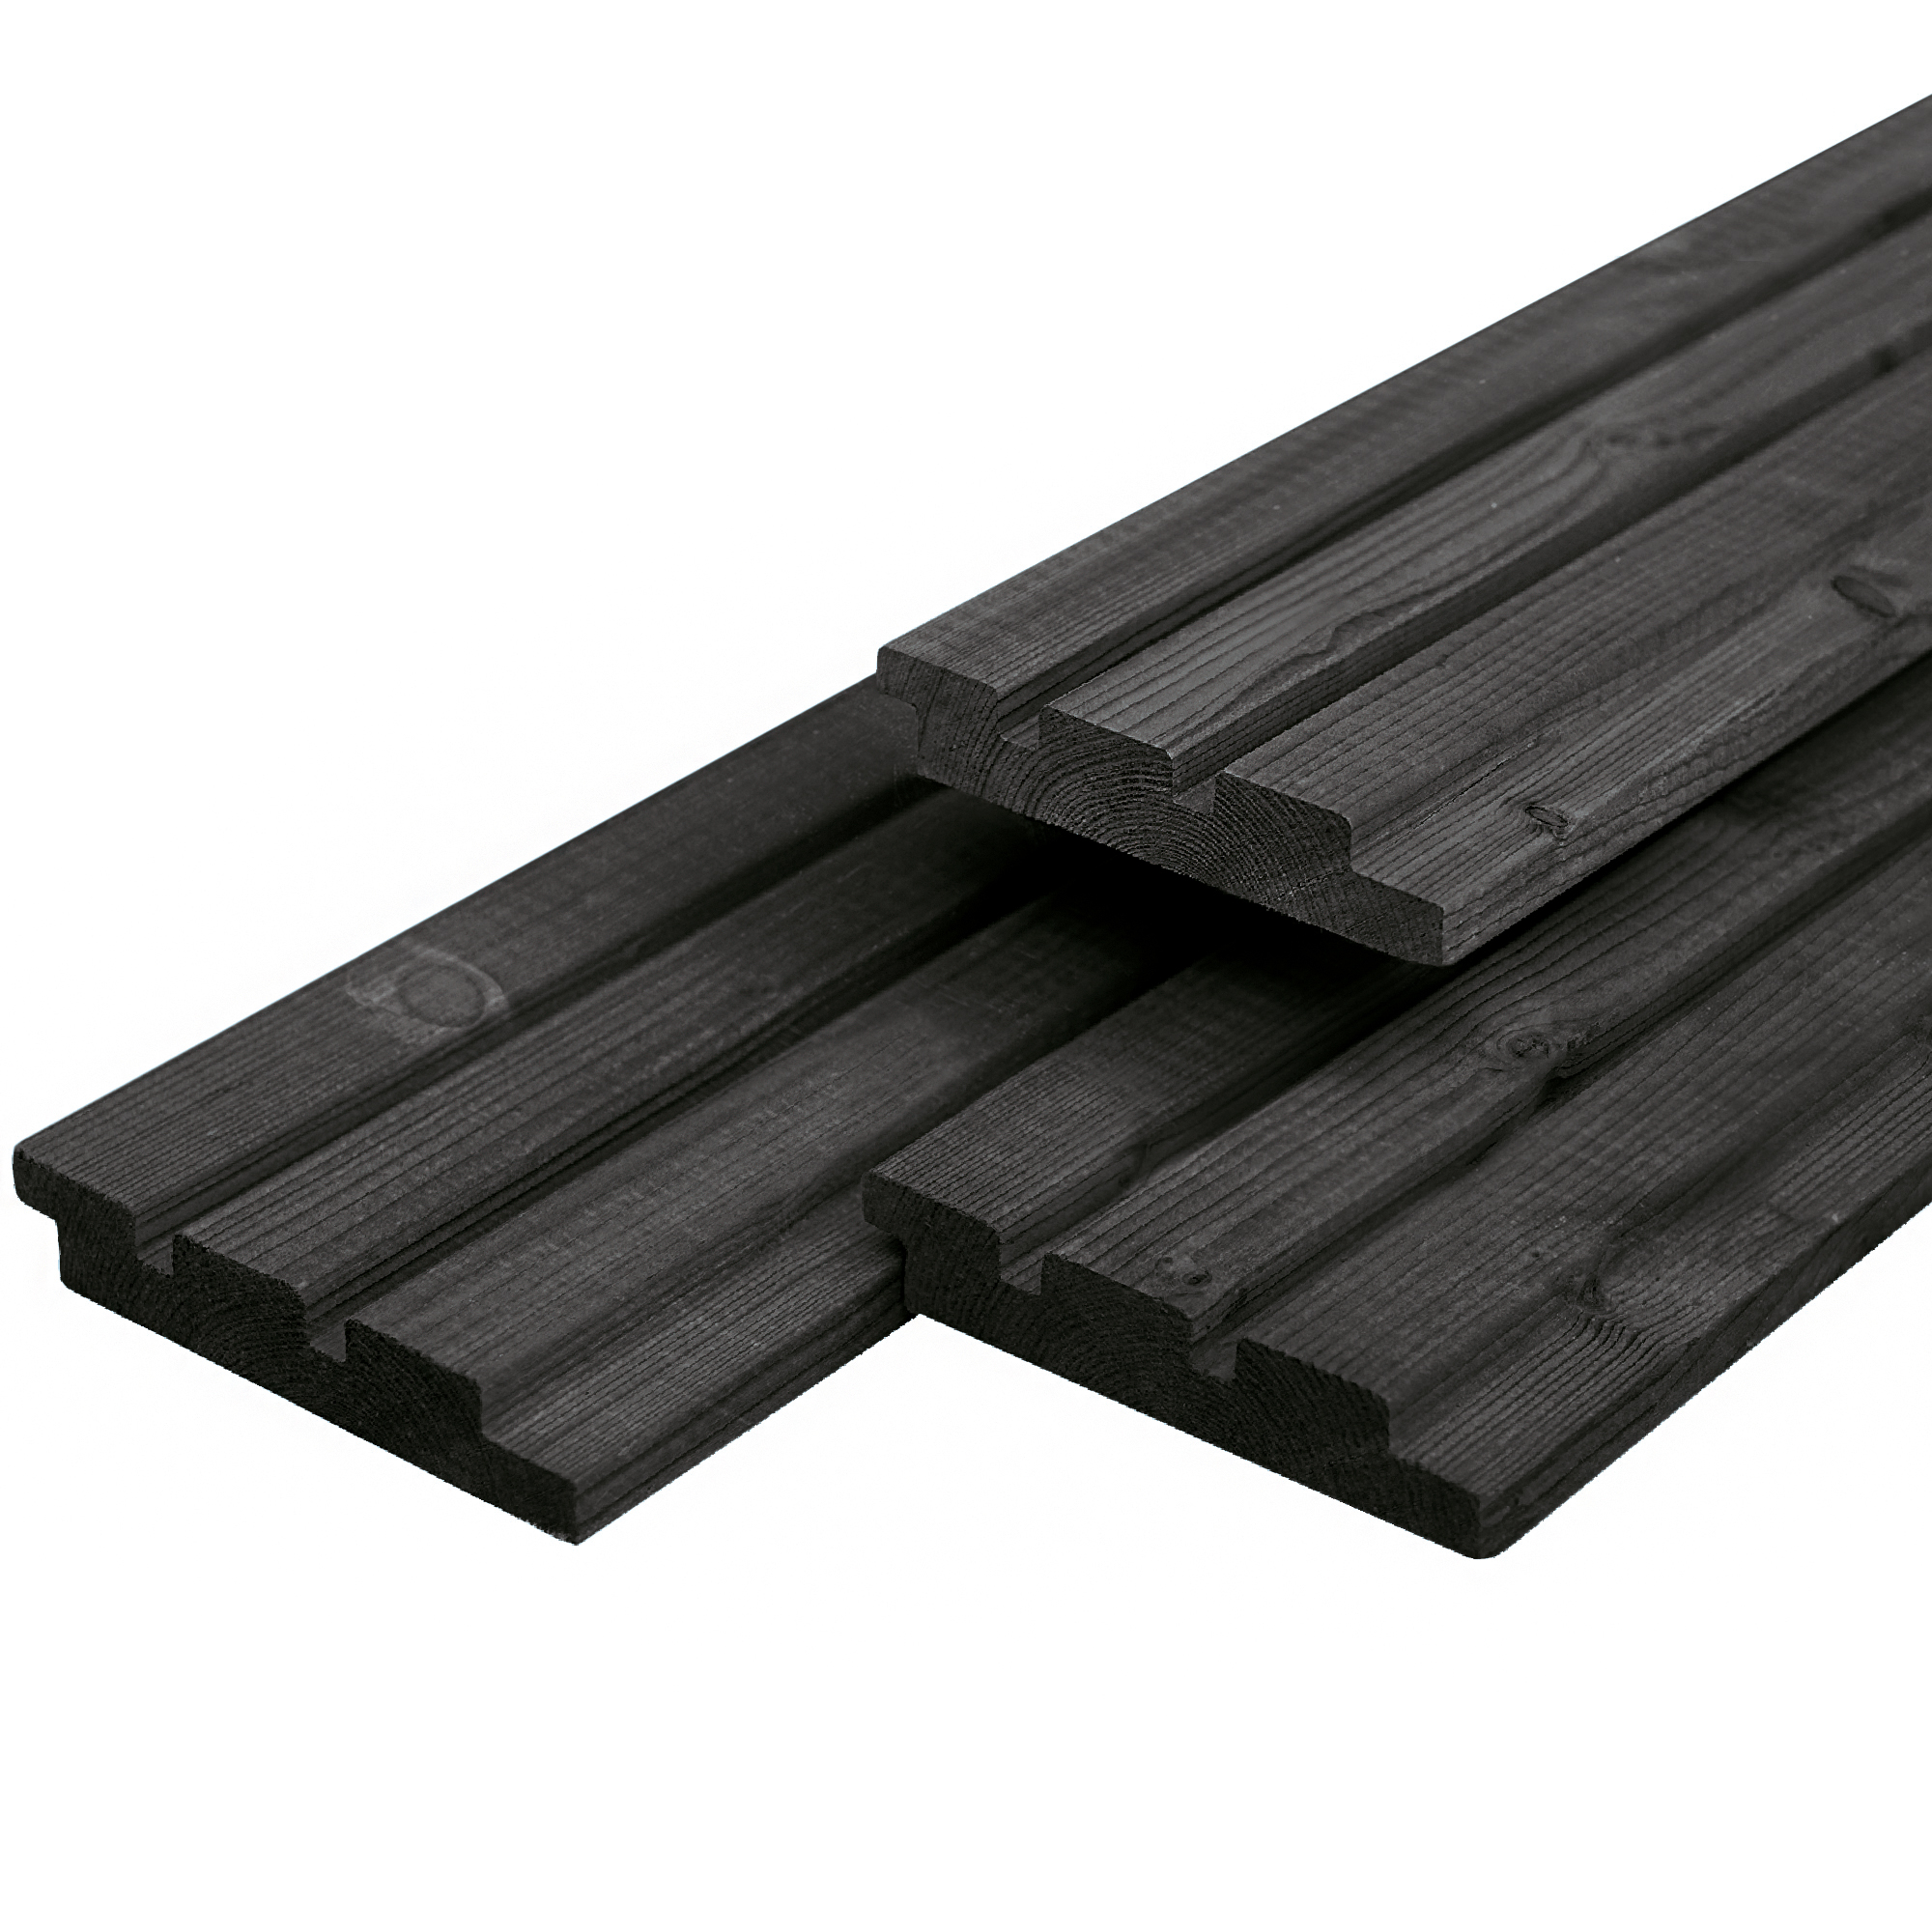 Dreifach-Profilholz aus Douglasie schwarz gespritzt 1.9x13.0x390cm